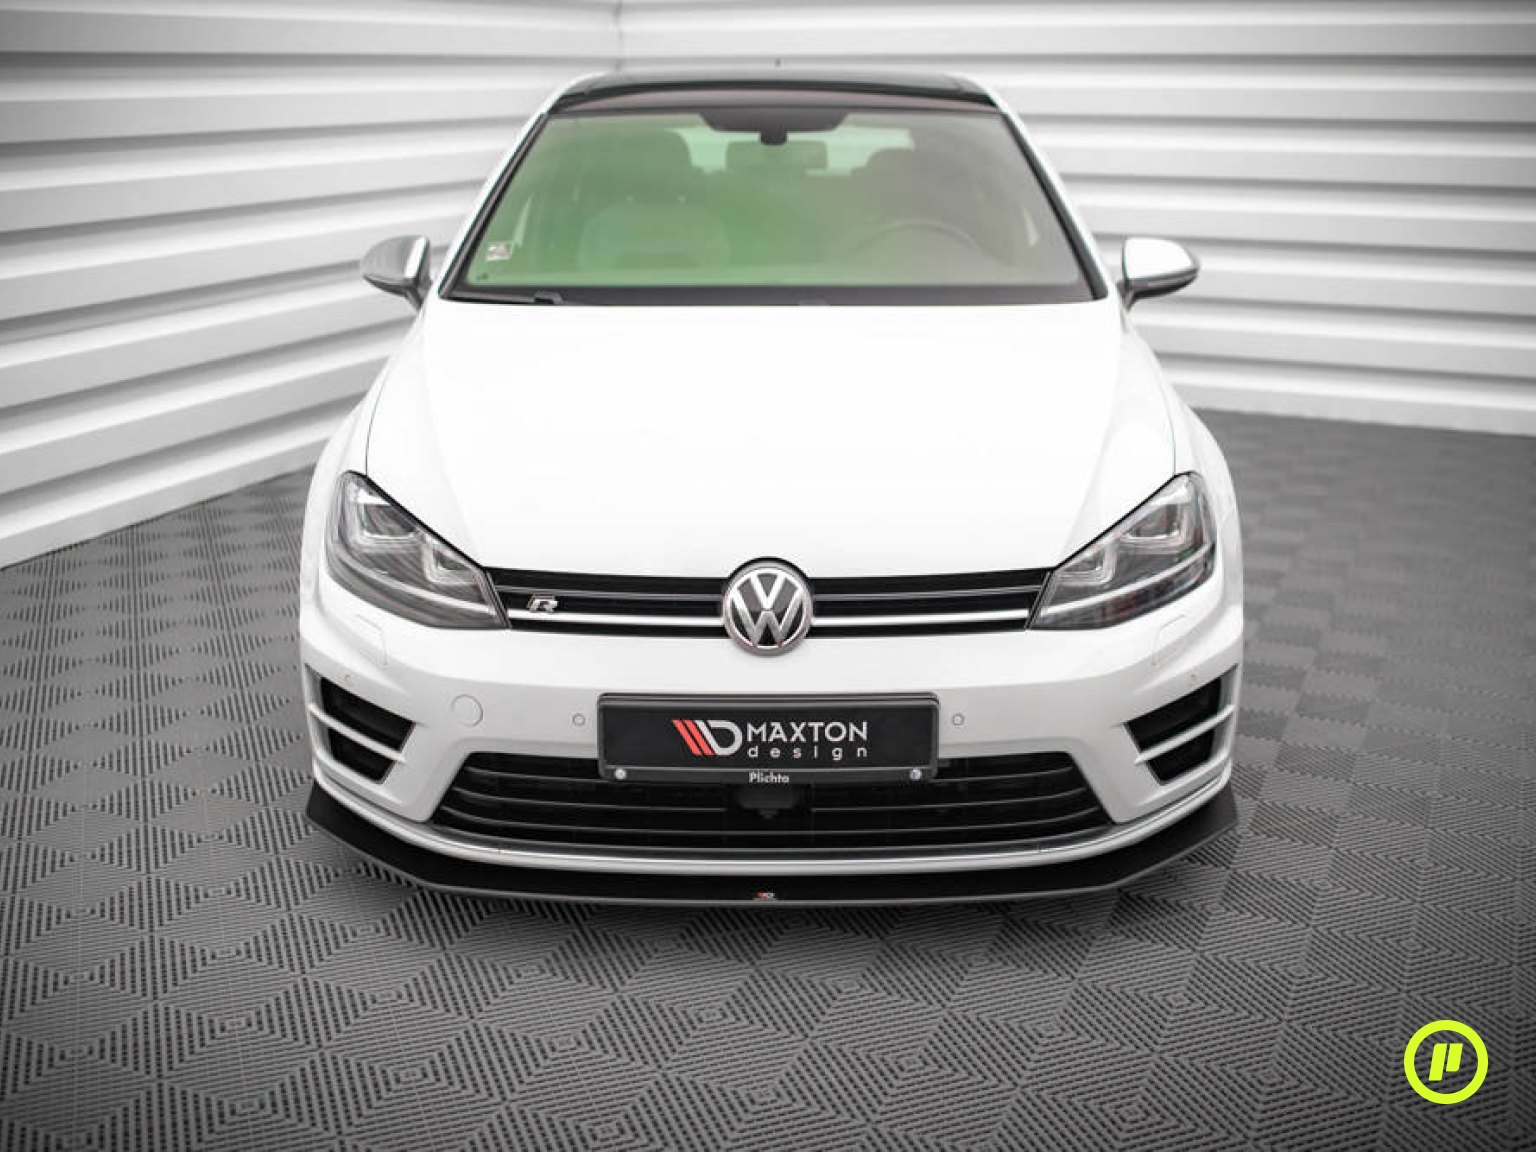 Maxton Design - Street Pro Front Splitter v2 for Volkswagen Golf 7 R (Mk7 2013-2016)